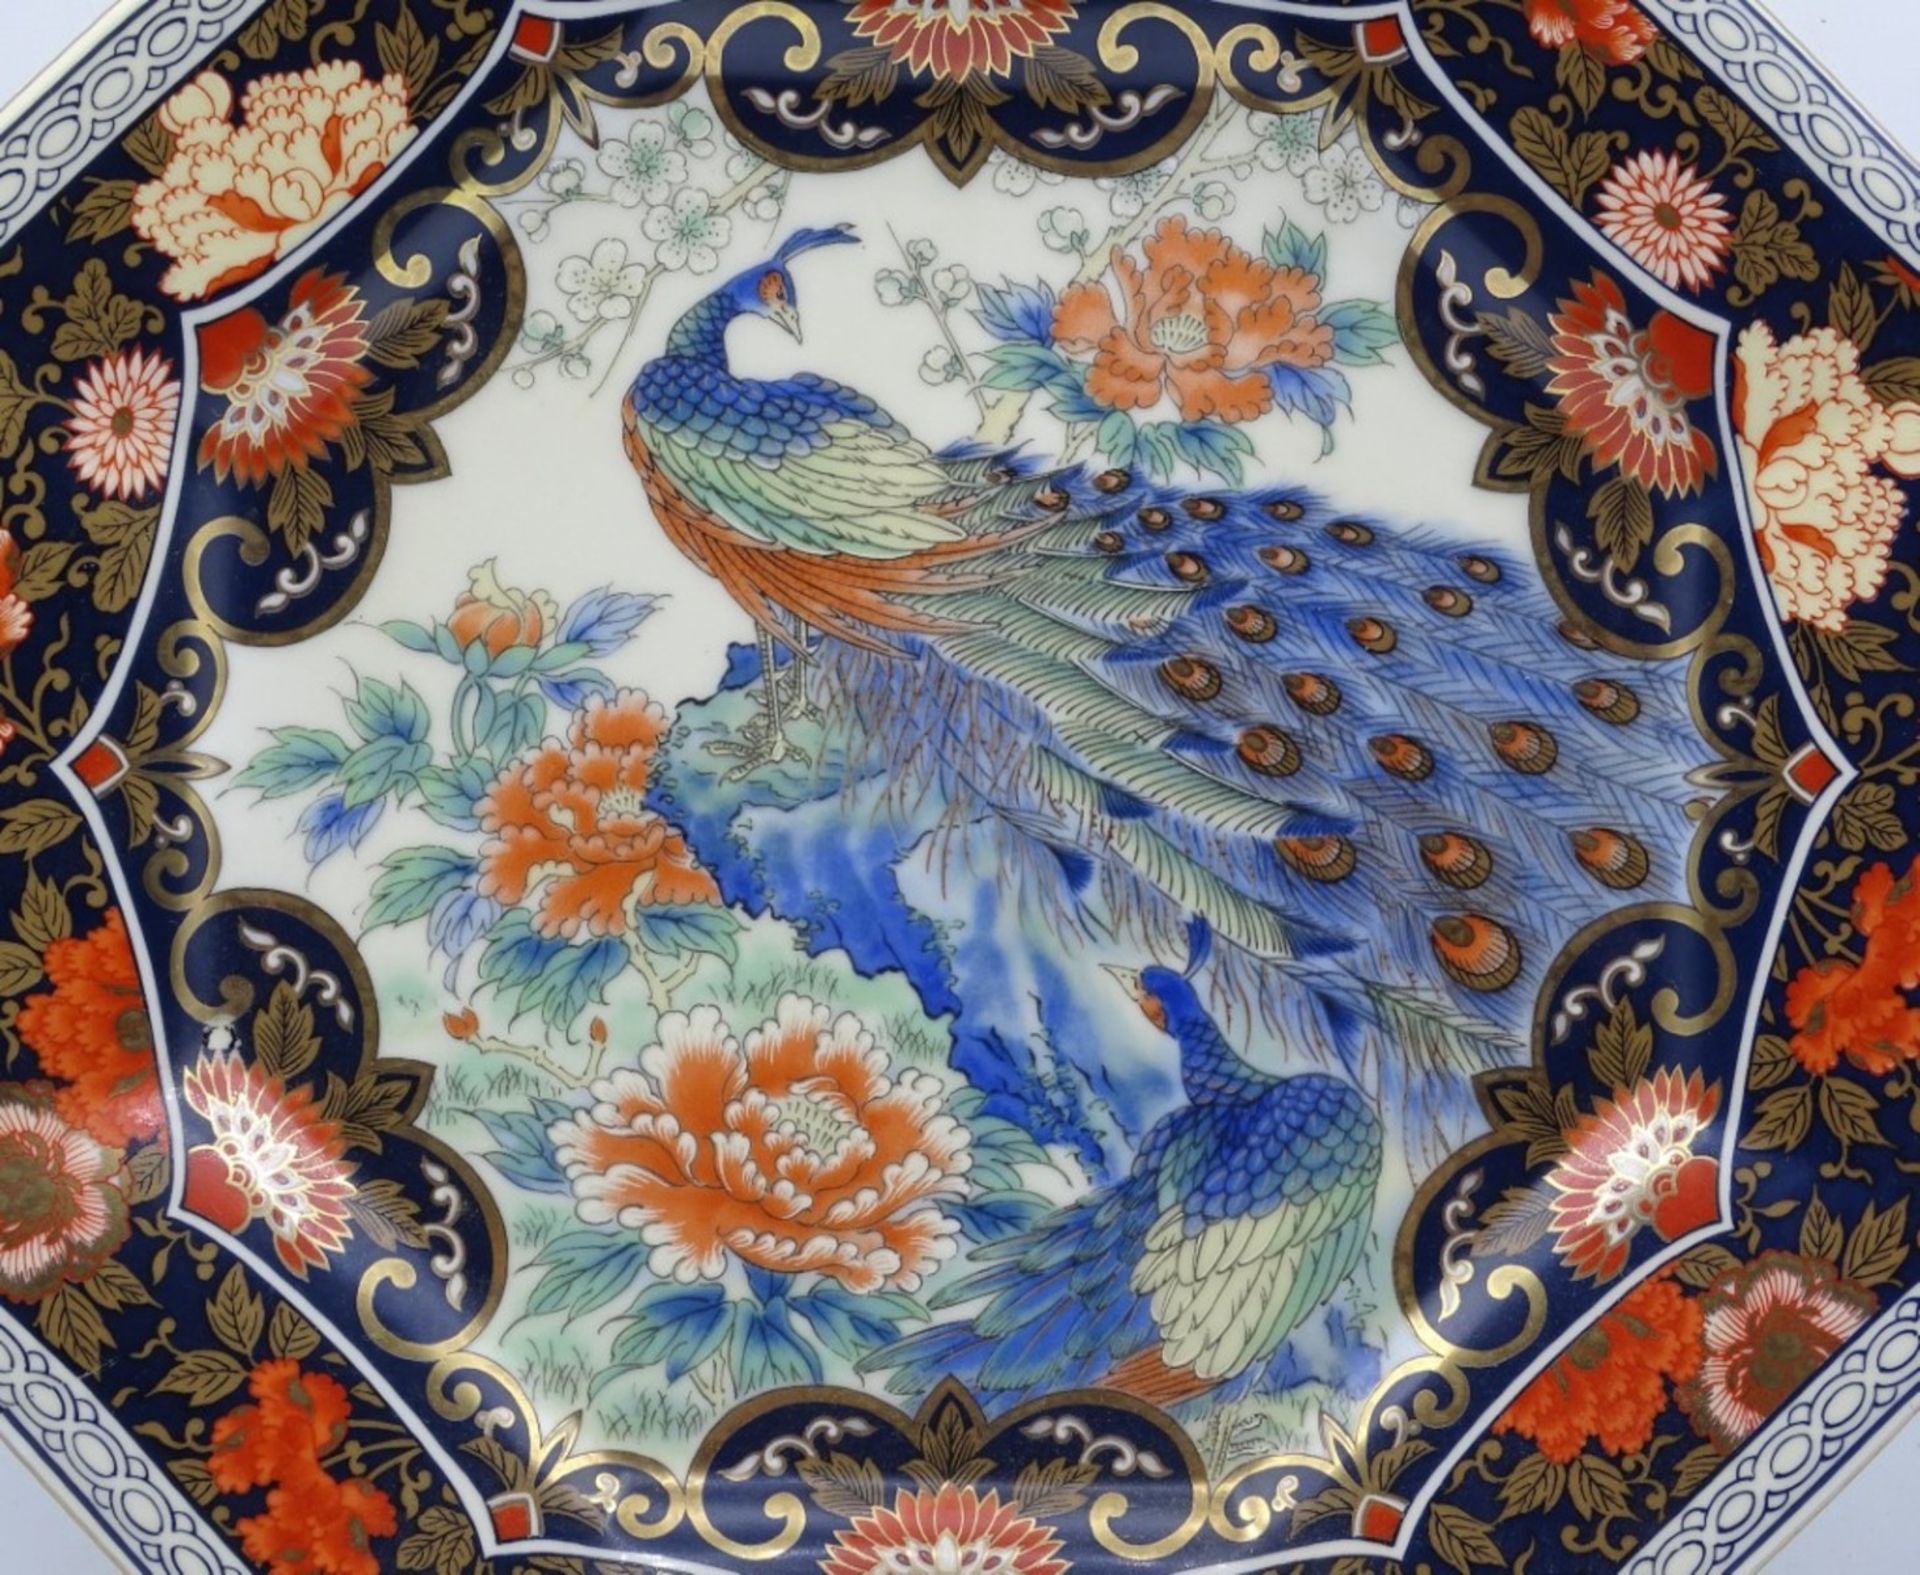 Eckiger Teller mit Pfau-Dekor,Japan, 26 x 26 cm - Bild 2 aus 3